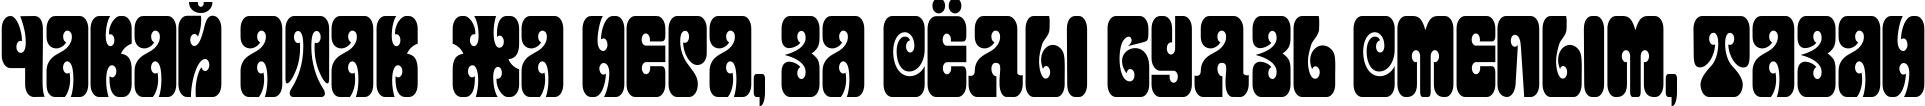 Пример написания шрифтом Terpsichora текста на белорусском